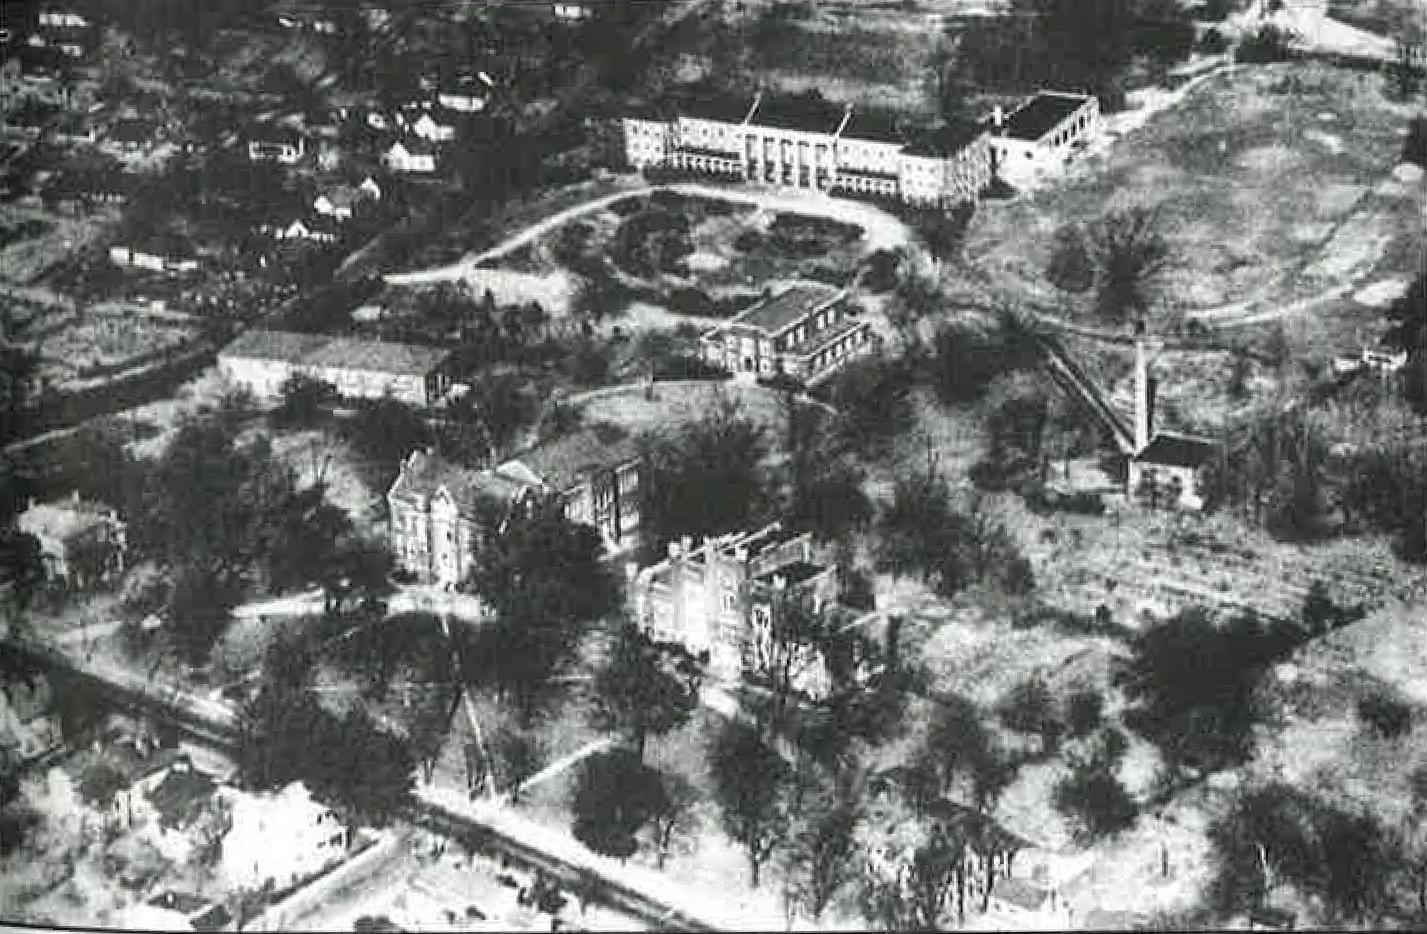 Harned大厅, 图中上部, 这张1935年左右的航拍照片中唯一屹立不倒的建筑是什么.